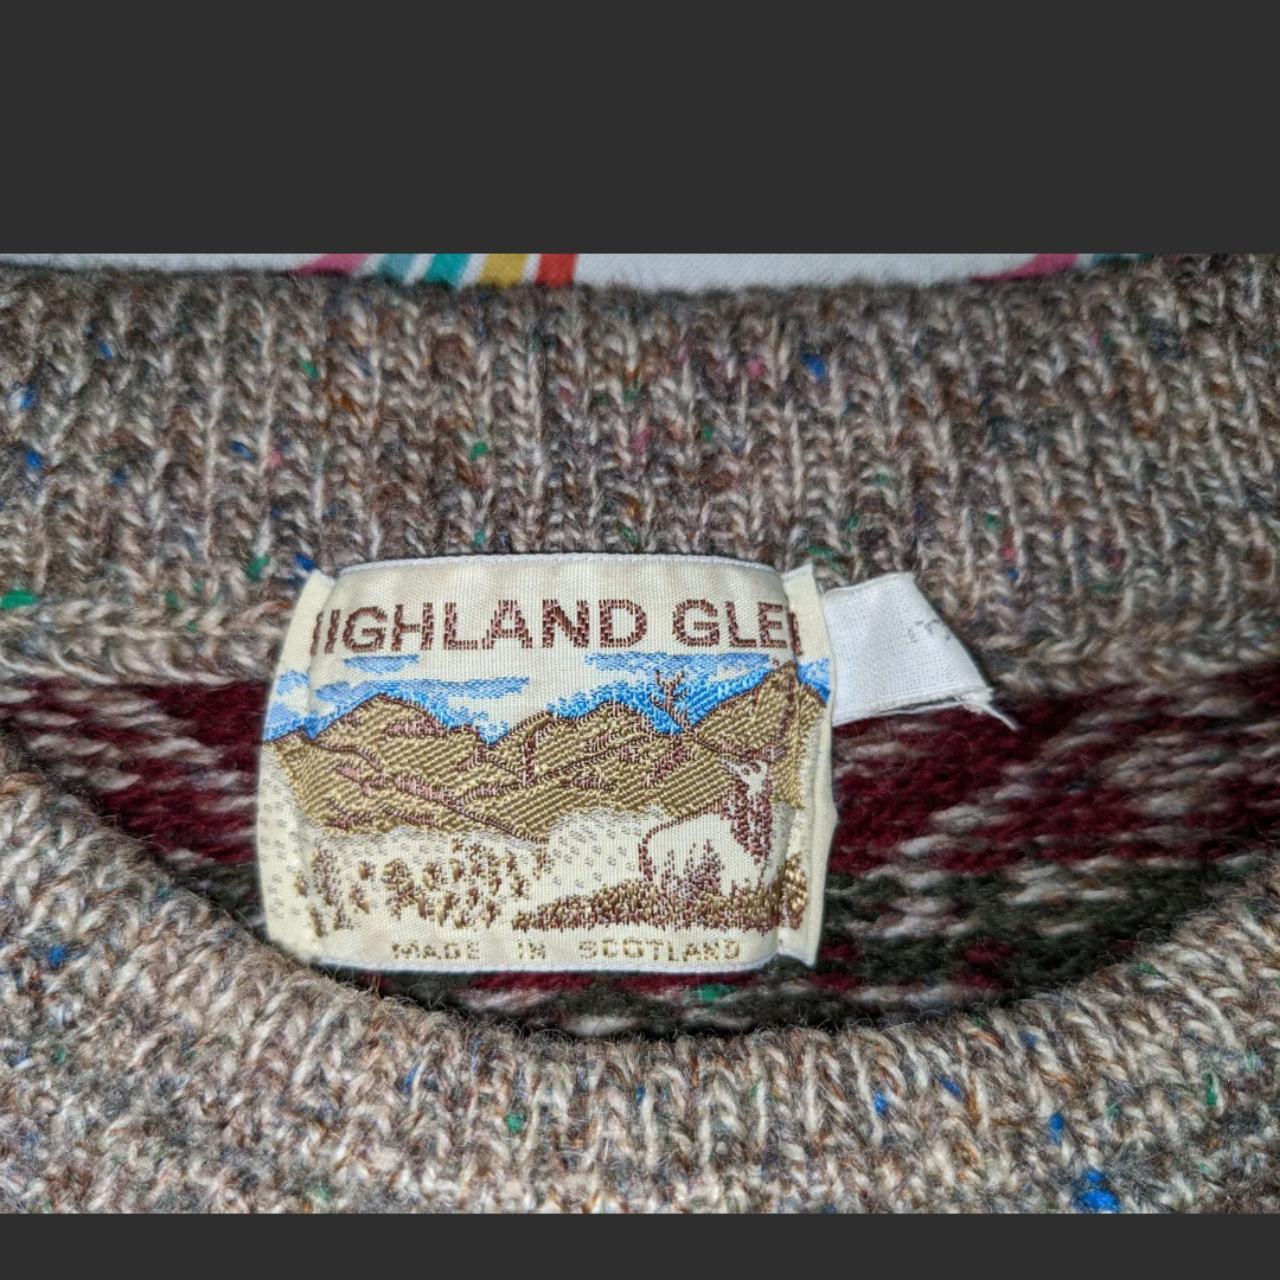 Highland Glen Vintage Knitted Wool Patterned Jumper... - Depop